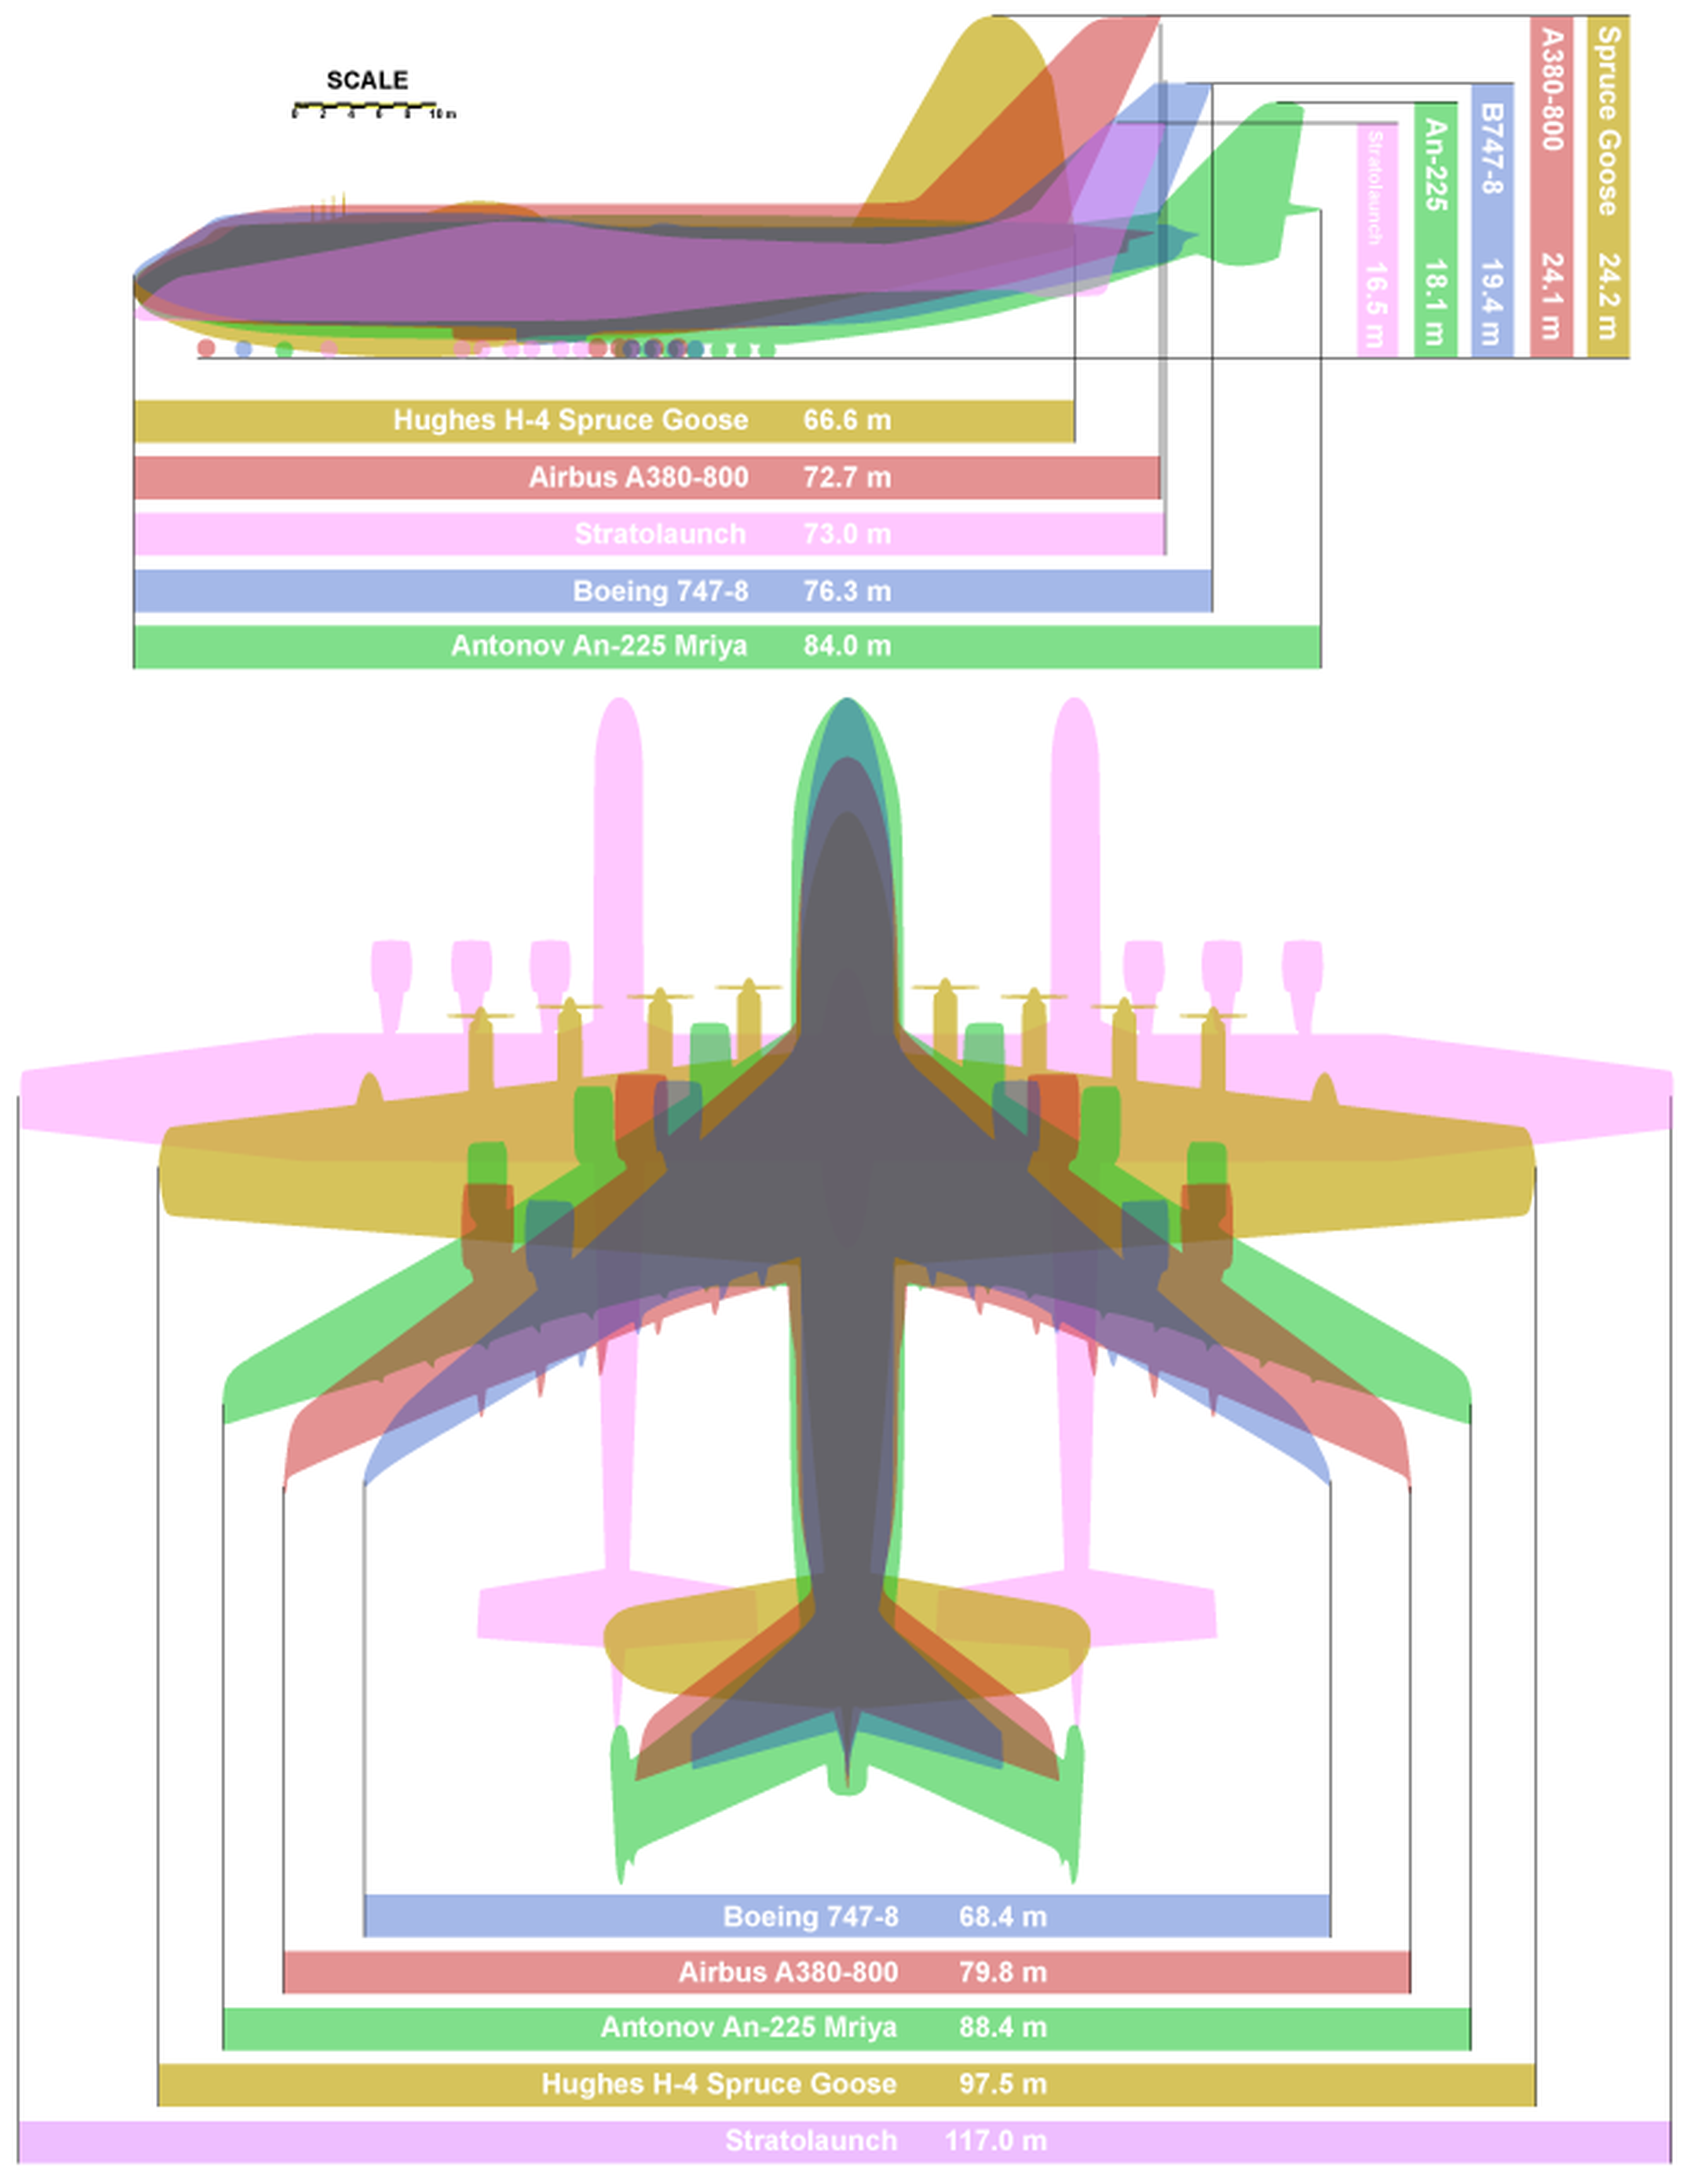 An-225 es 11 metros más largo que el A380